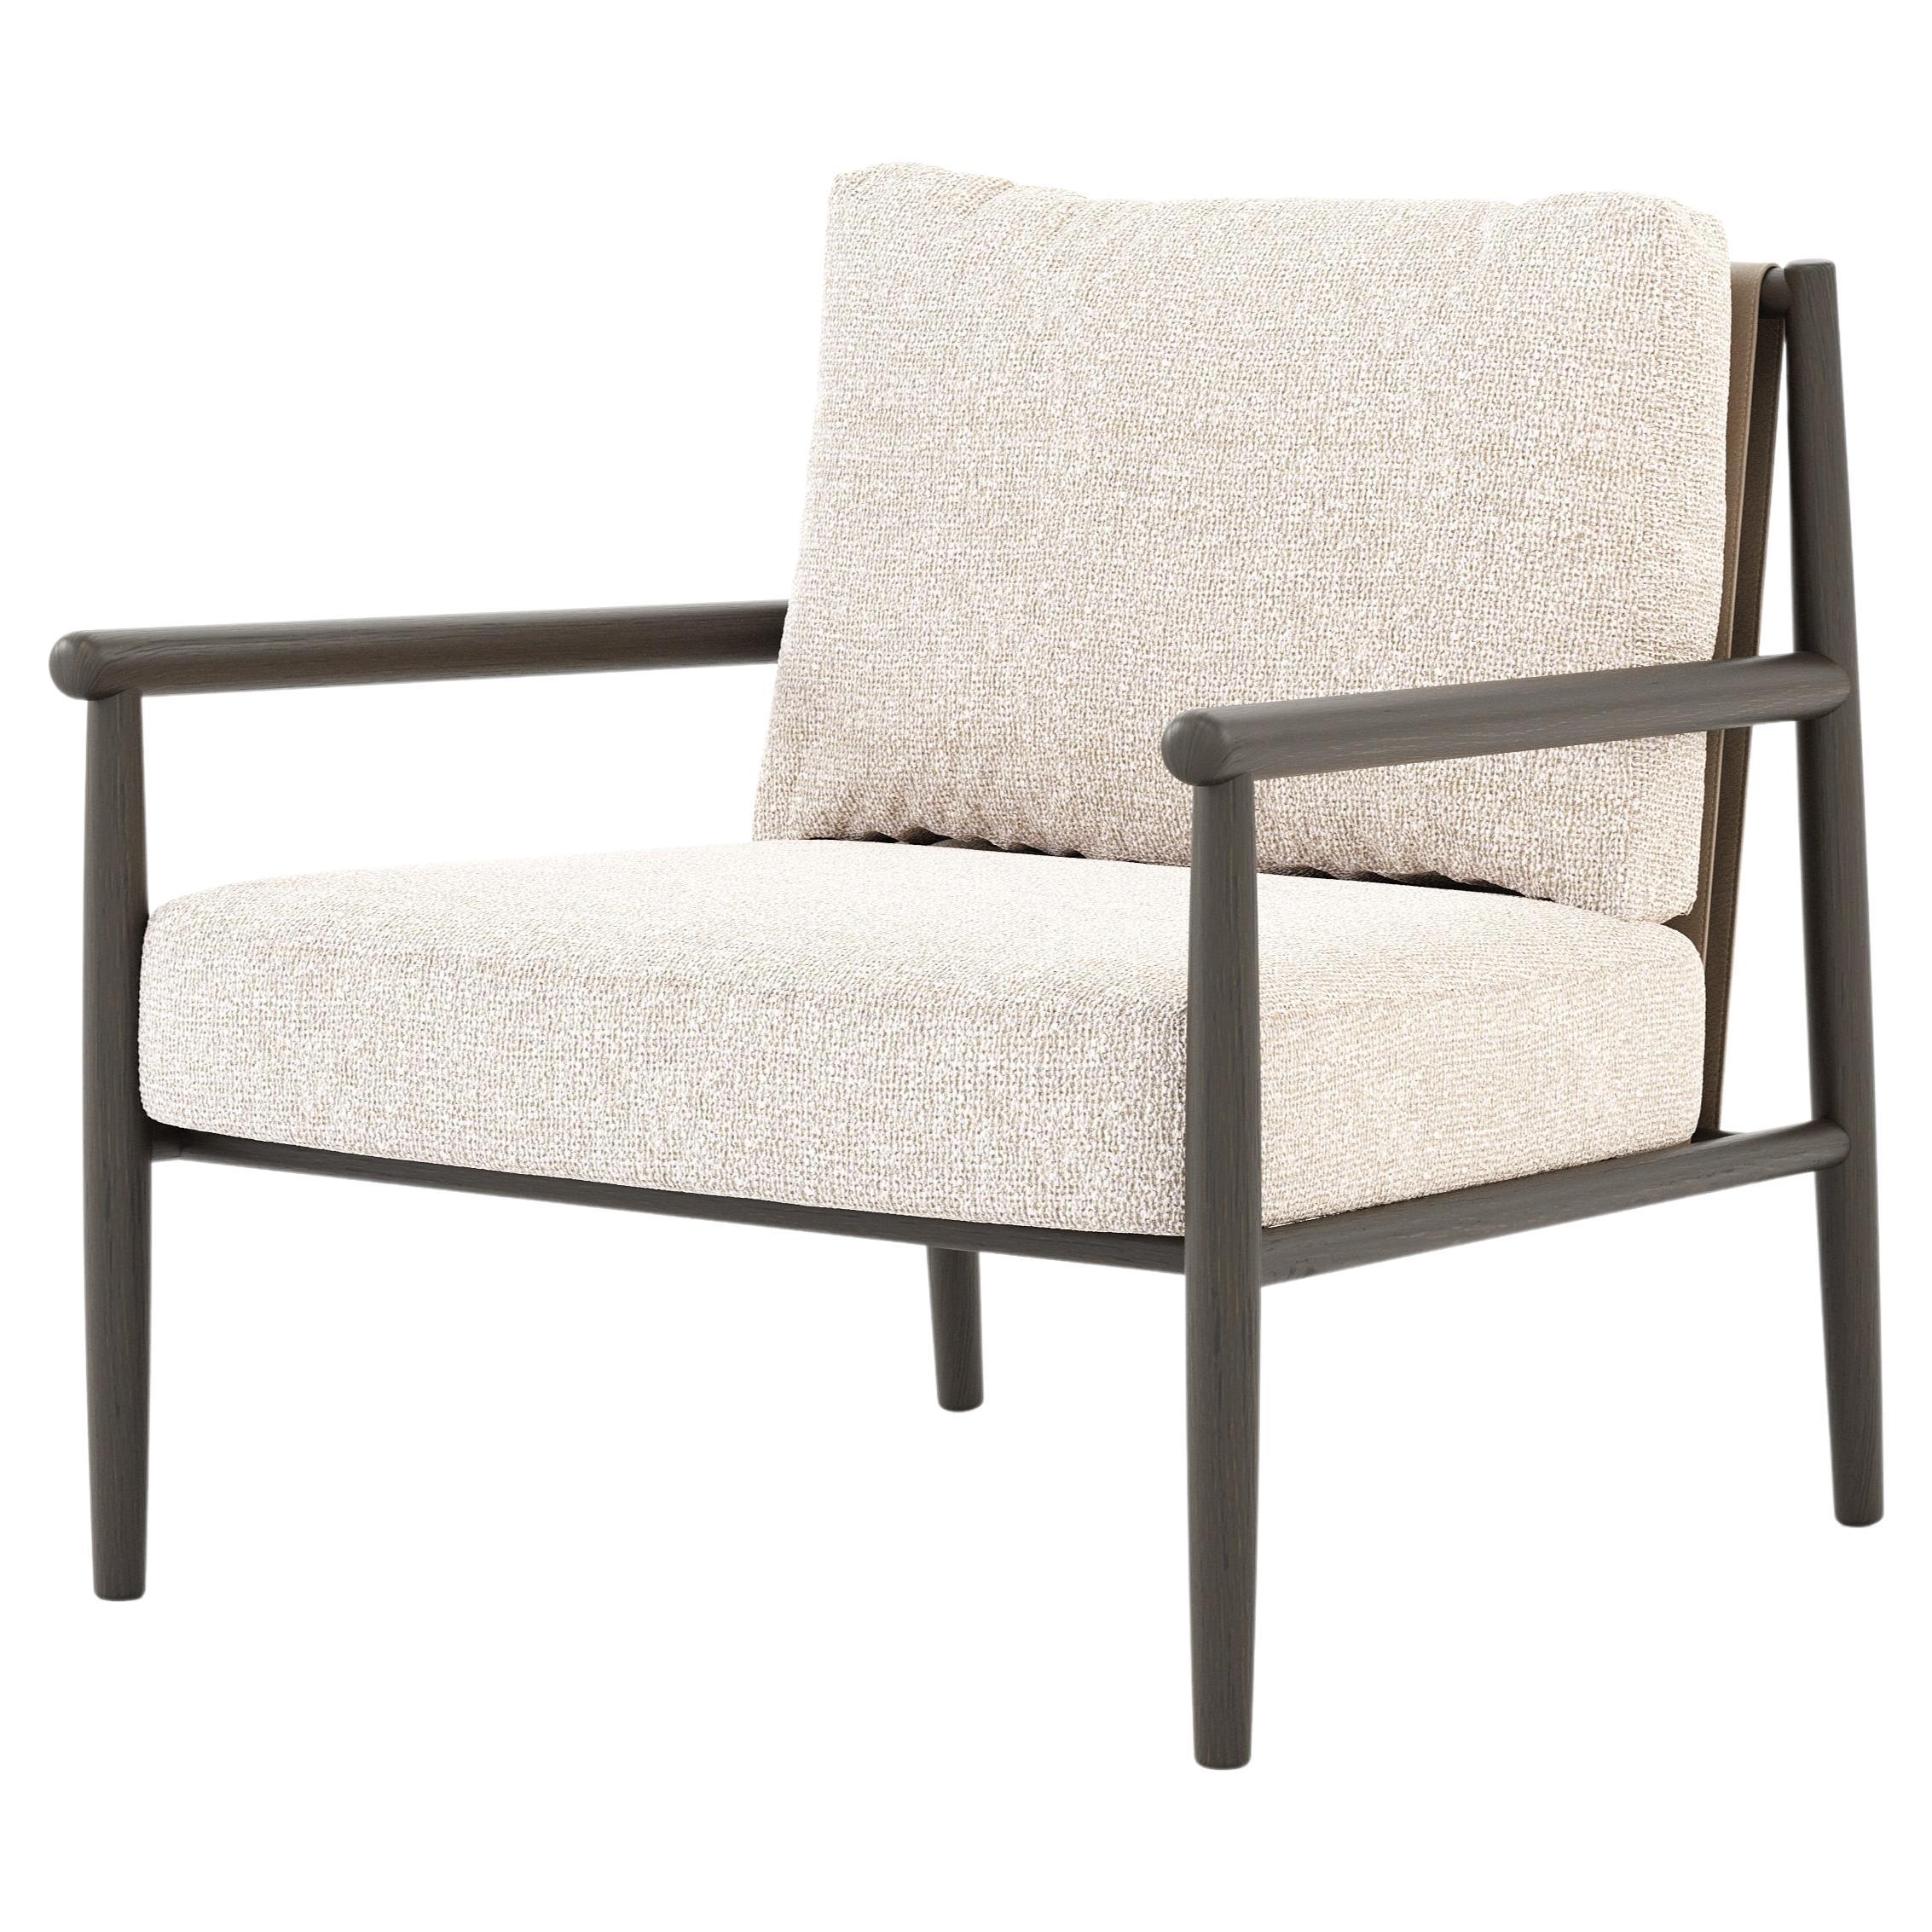 Skandinavischer moderner Landform-Sessel aus Holz und Textilien, handgefertigt